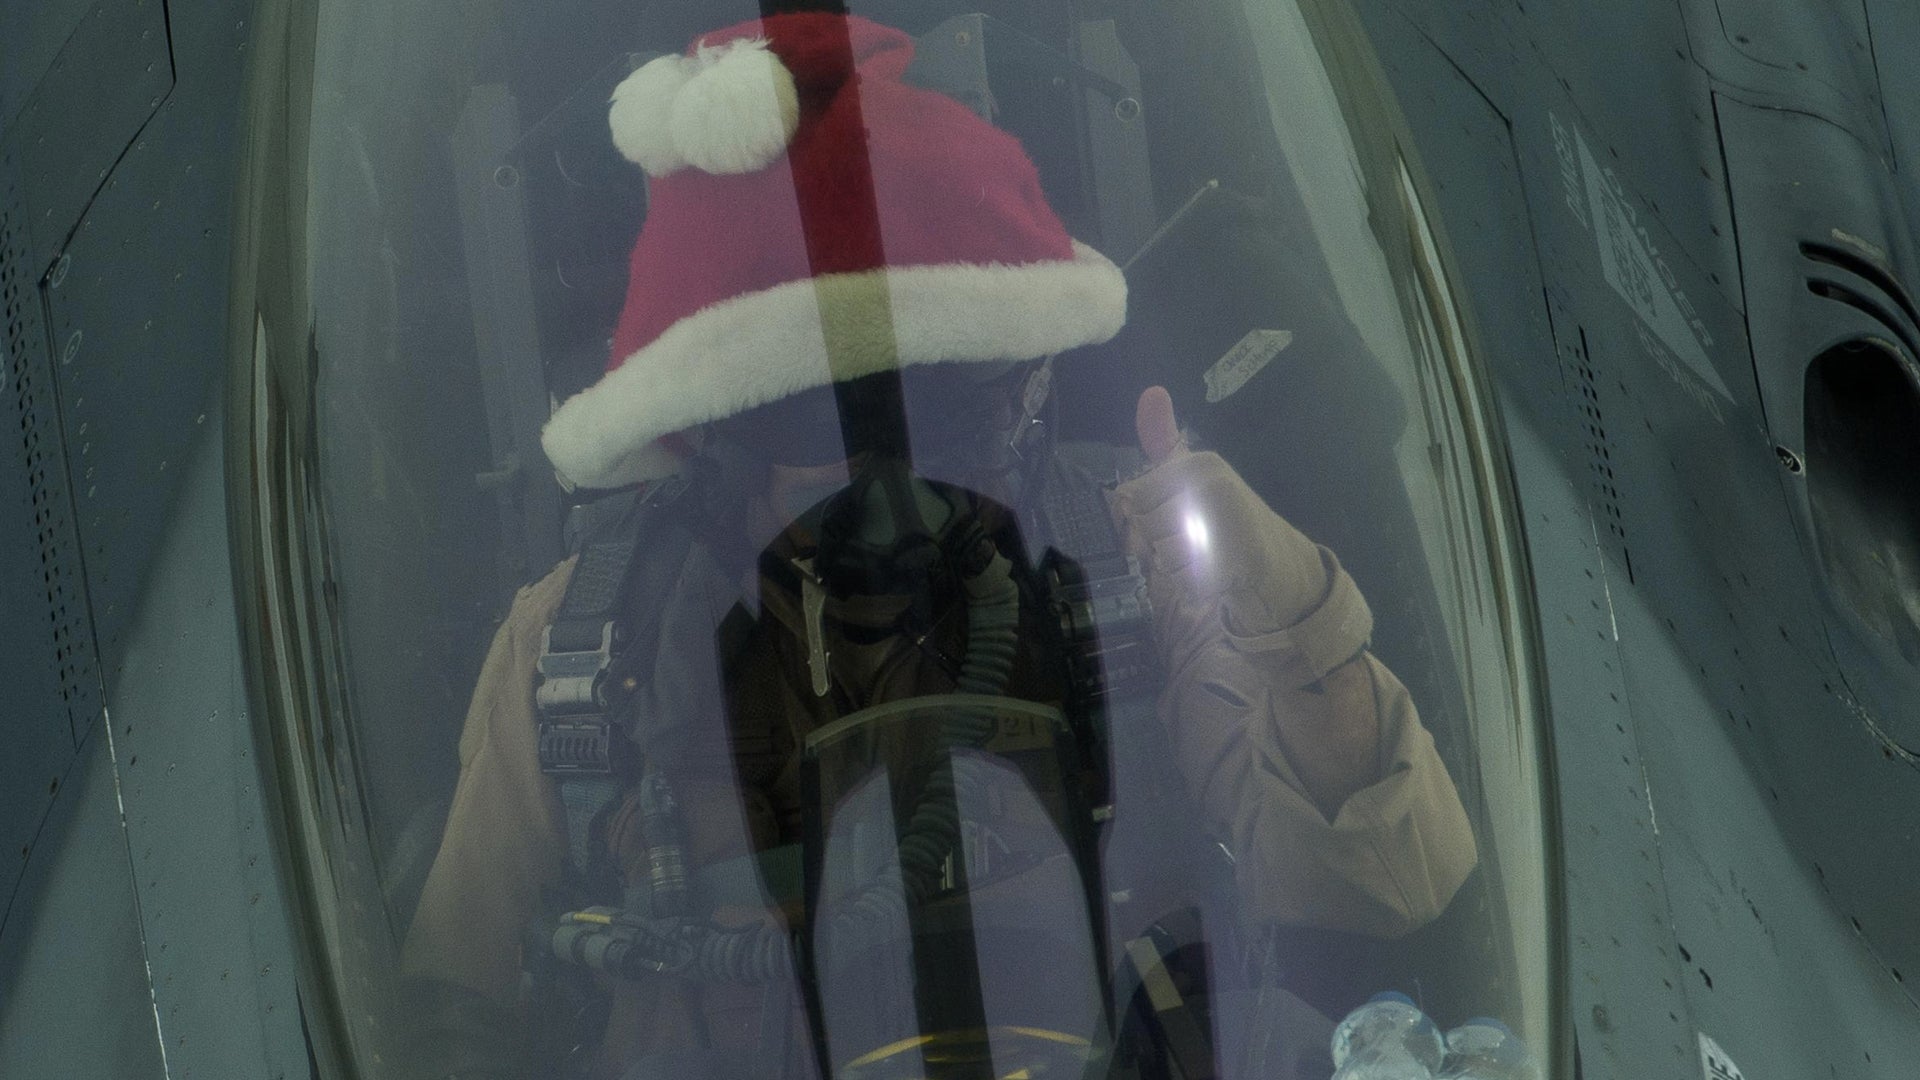 ‘We make it fun’ — Inside an Air Force Christmas at 30,000 feet over war-torn Iraq